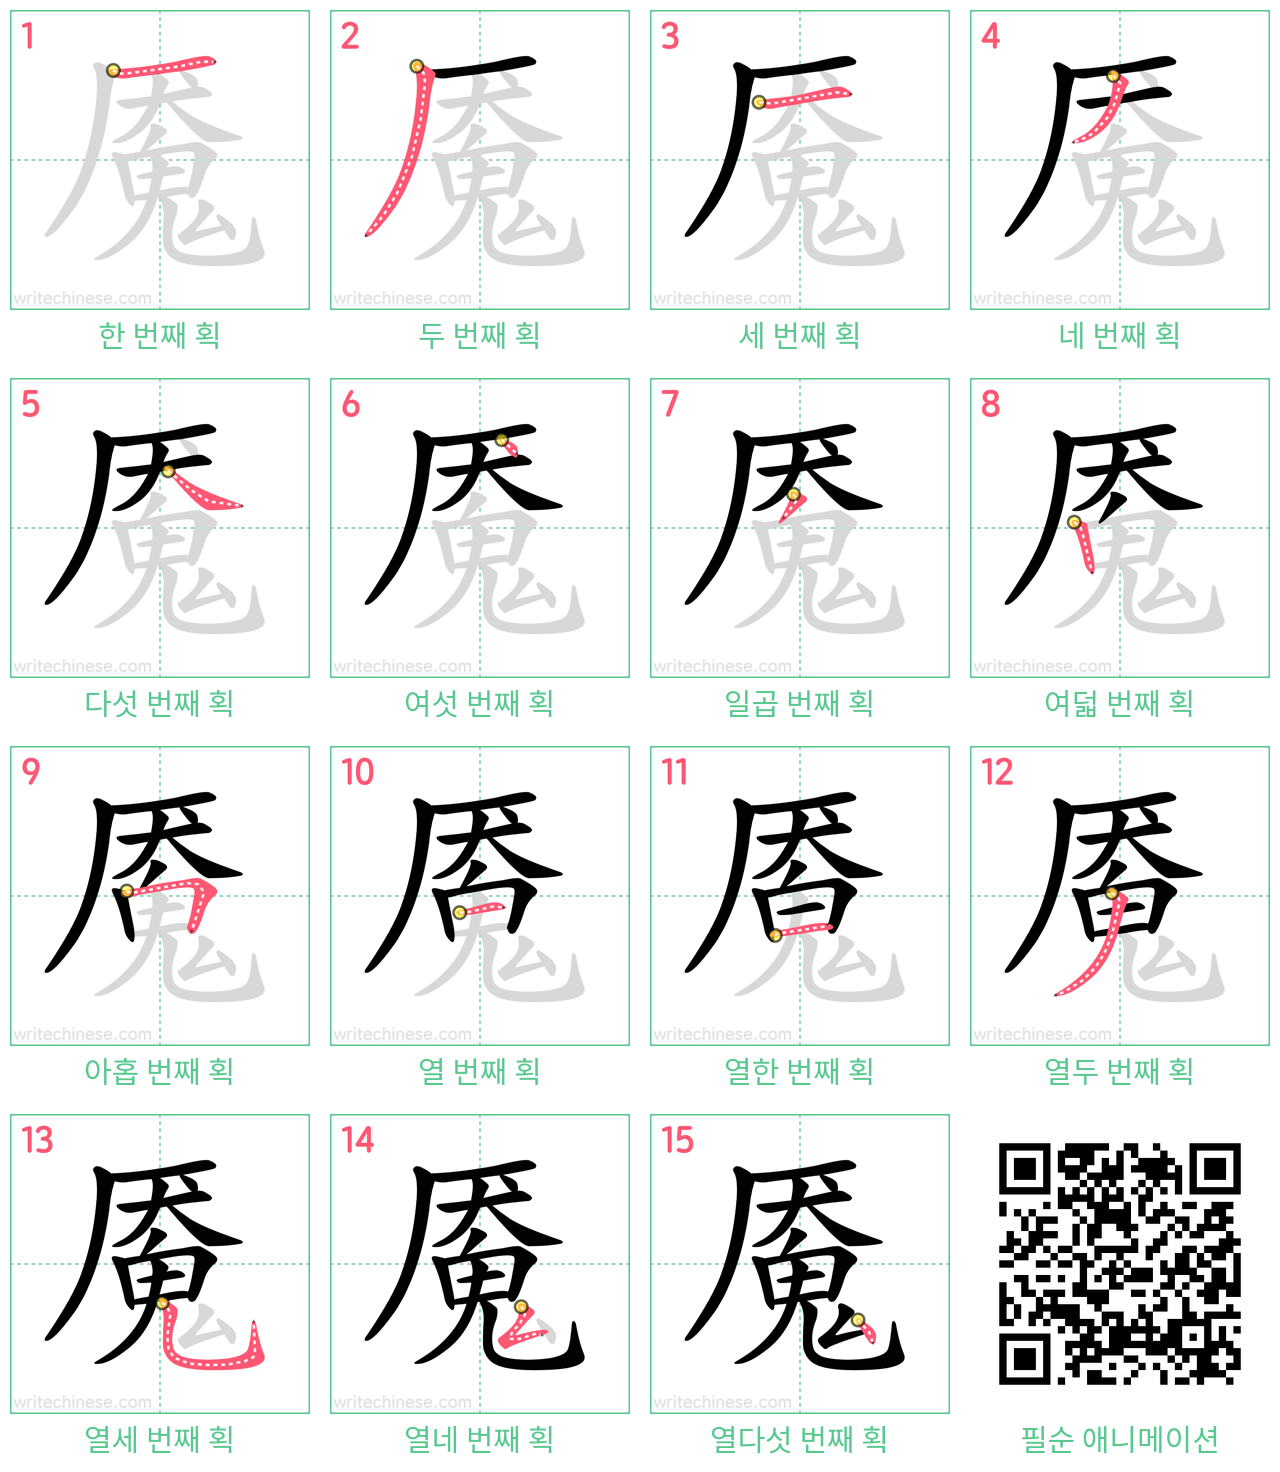 魇 step-by-step stroke order diagrams